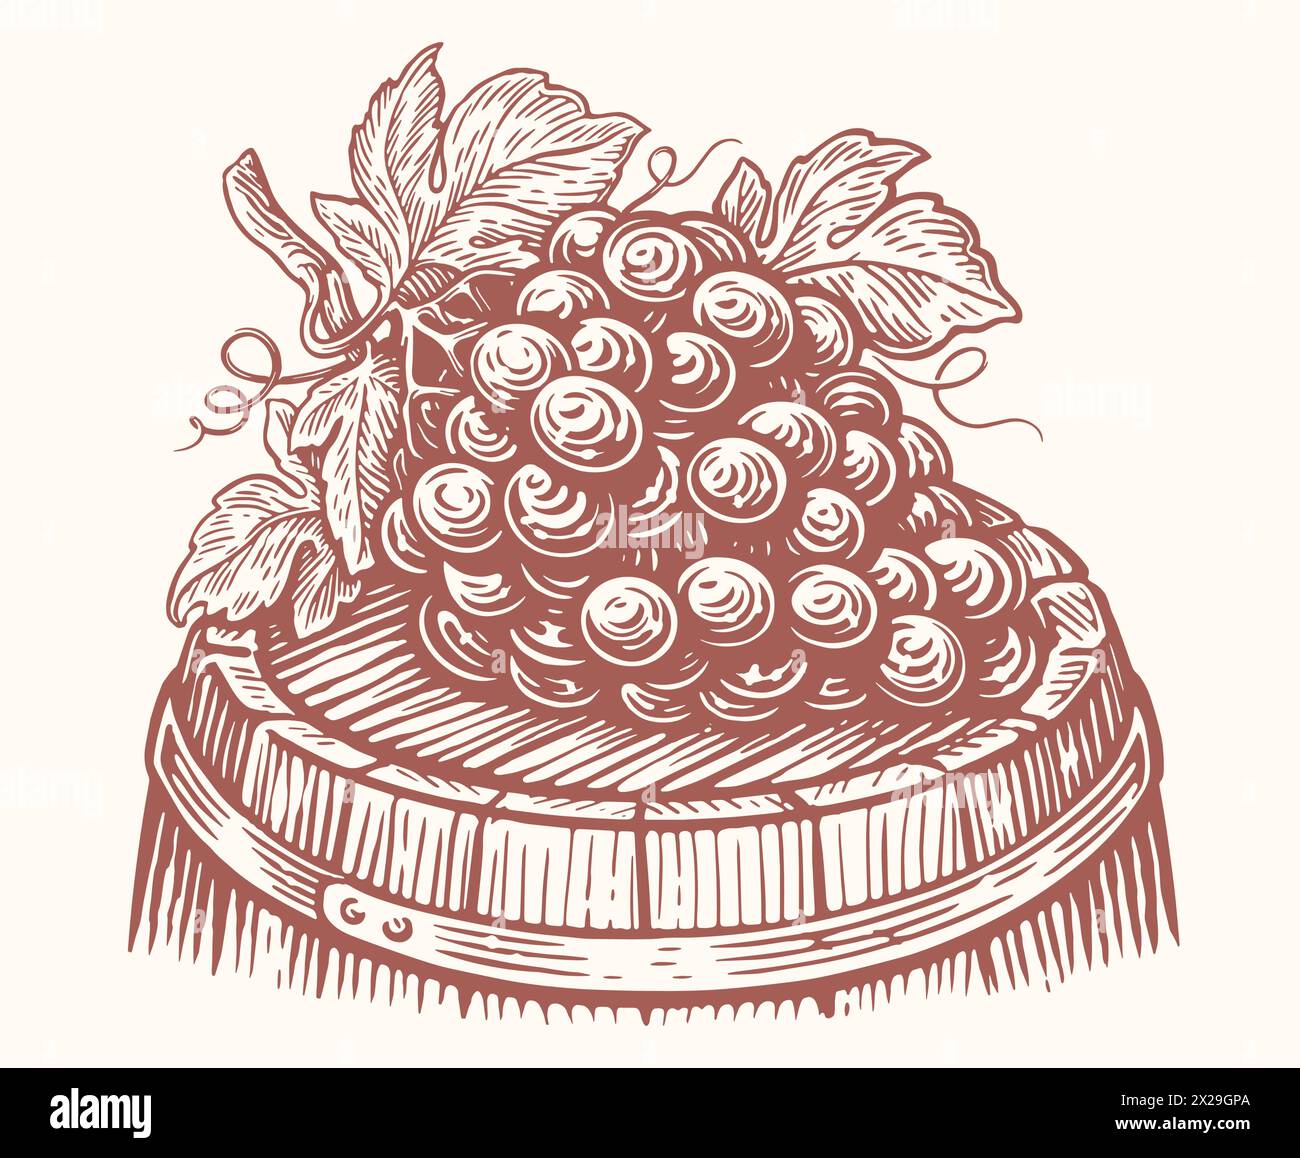 Ein Haufen reifer Trauben liegt auf Holzfässern mit Wein. Weinberg, Weingut Skizze Vektor Illustration Stock Vektor